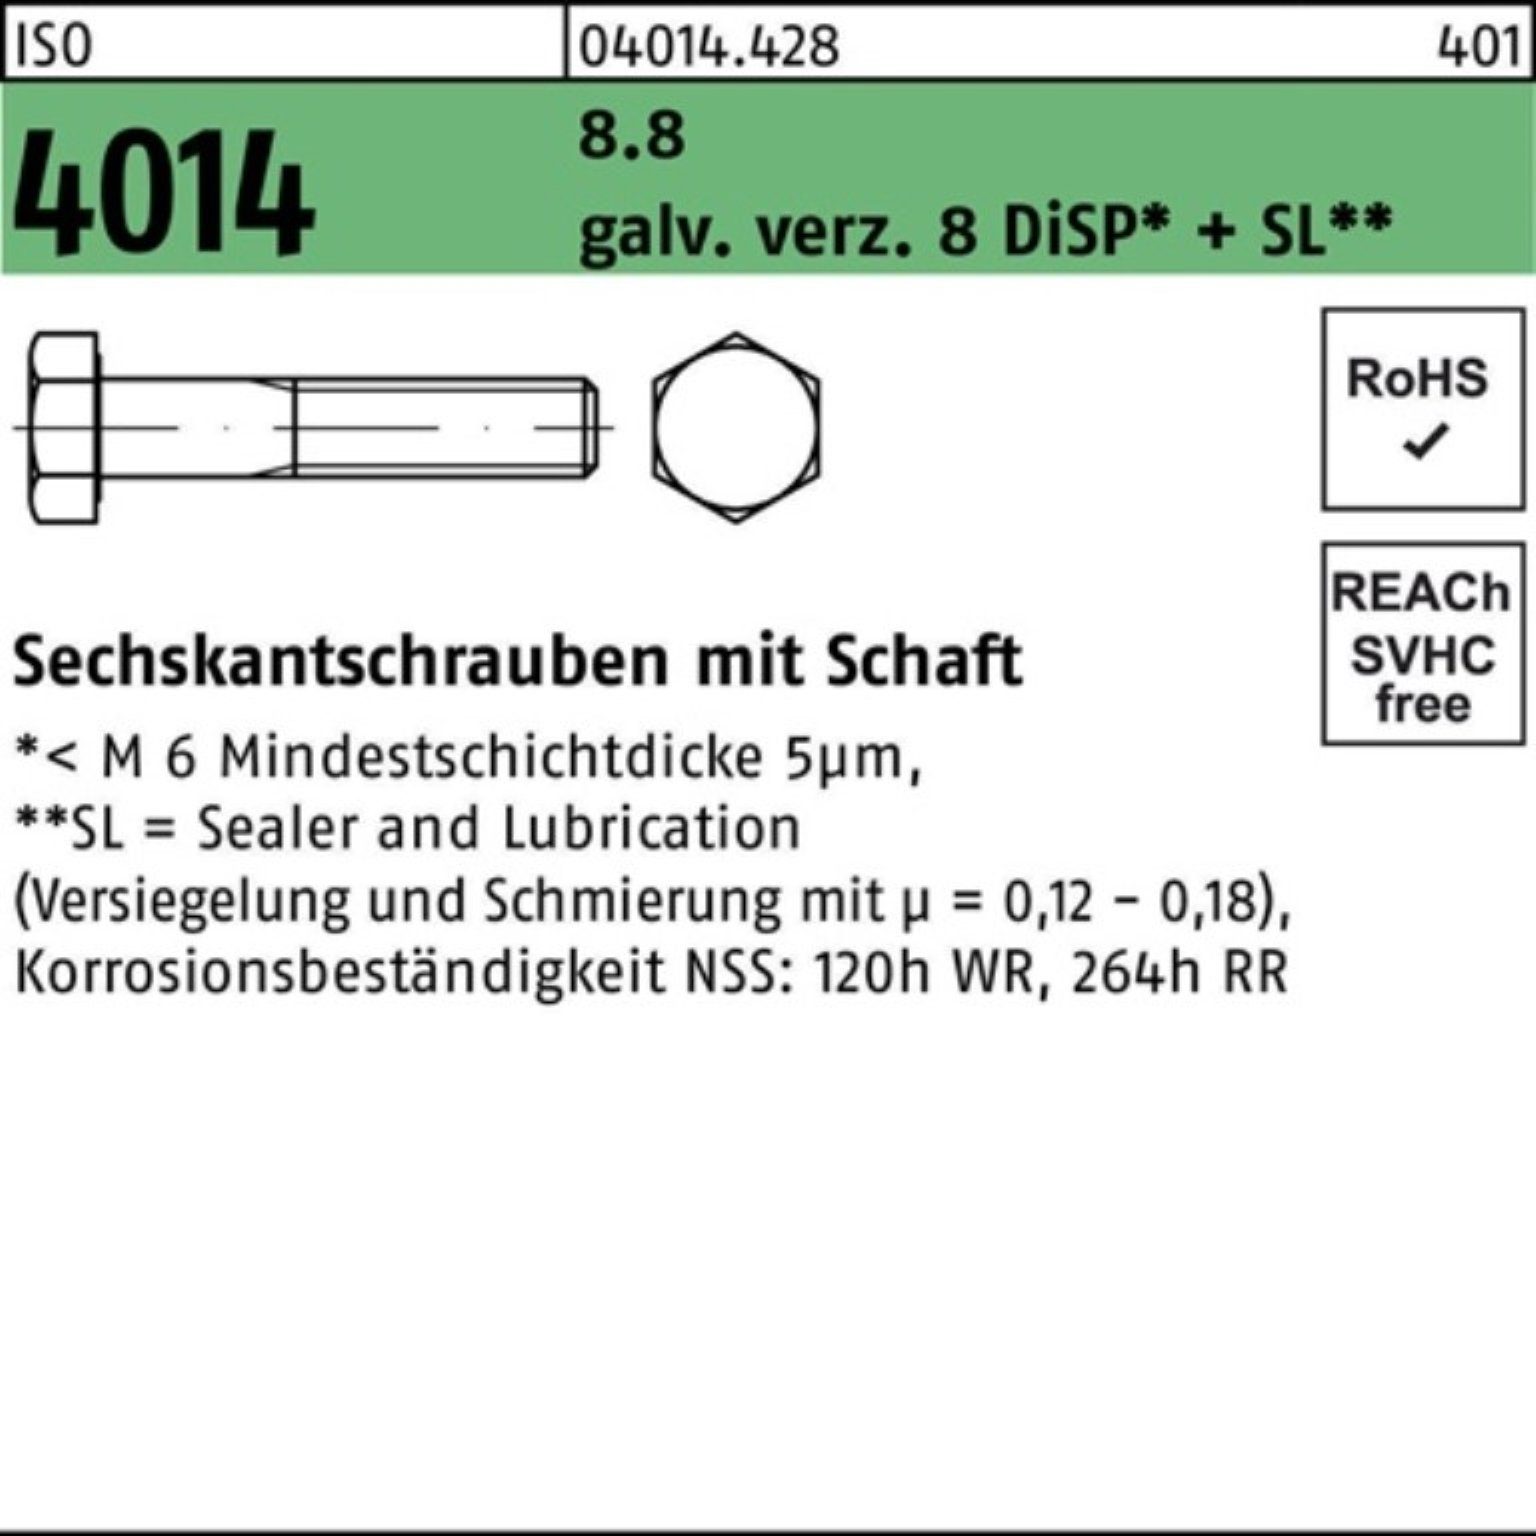 Bufab Sechskantschraube 100er Pack Sechskantschraube ISO 4014 Schaft M20x180 8.8 galv.verz. 8